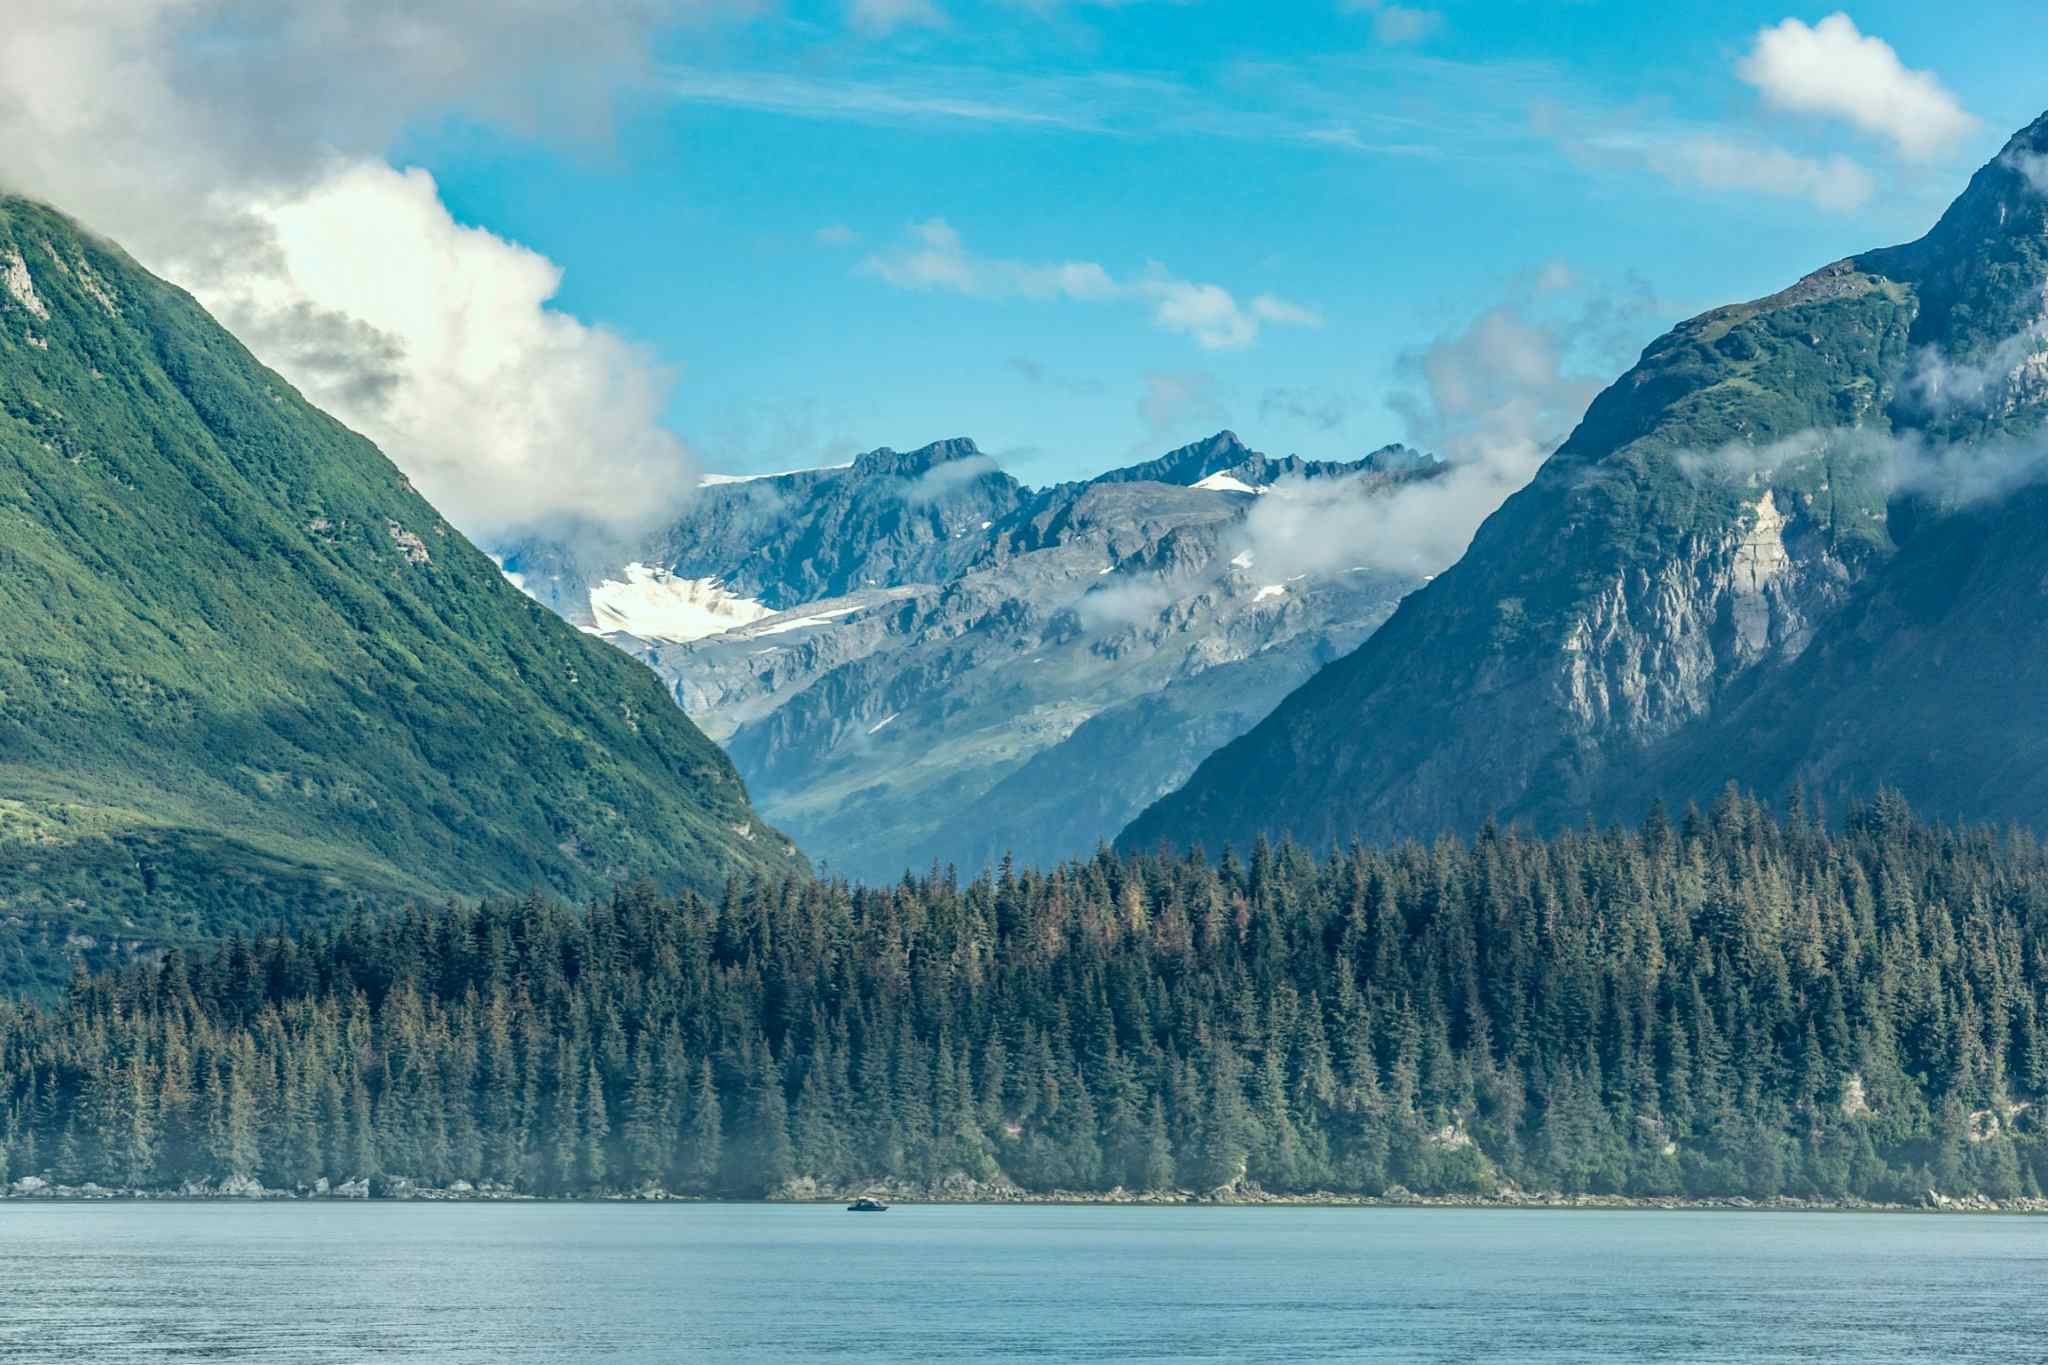 Valdez, Alaska
https://www.canva.com/photos/MADKCM3AubA-valdez-arm-alaska/